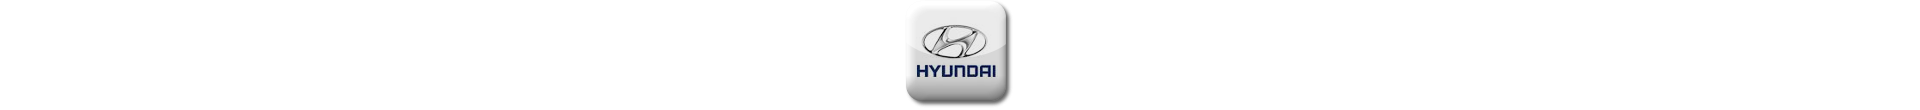 Boitier additionnel Hyundai Diesel Evolussem